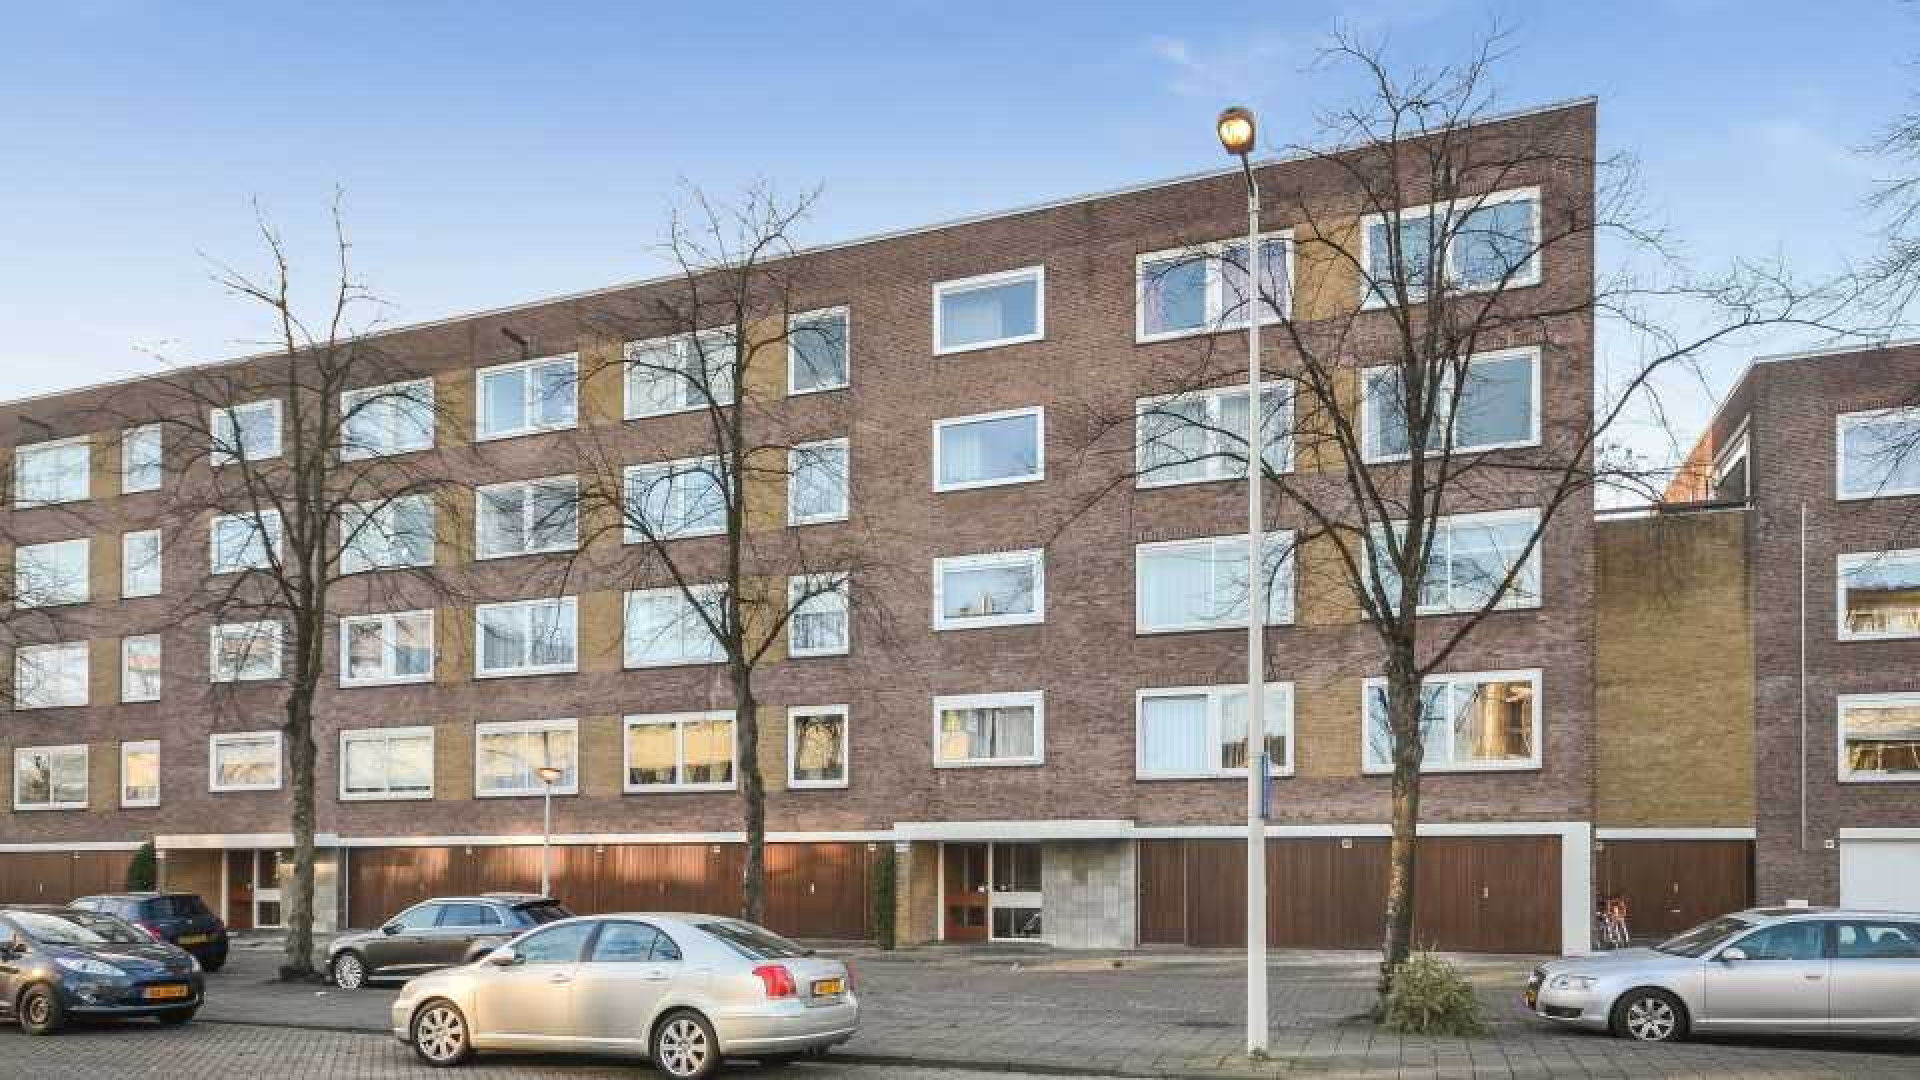 Ruud Gullit wint rechtszaak van ex en kan nu zijn appartement verkopen. Zie foto's